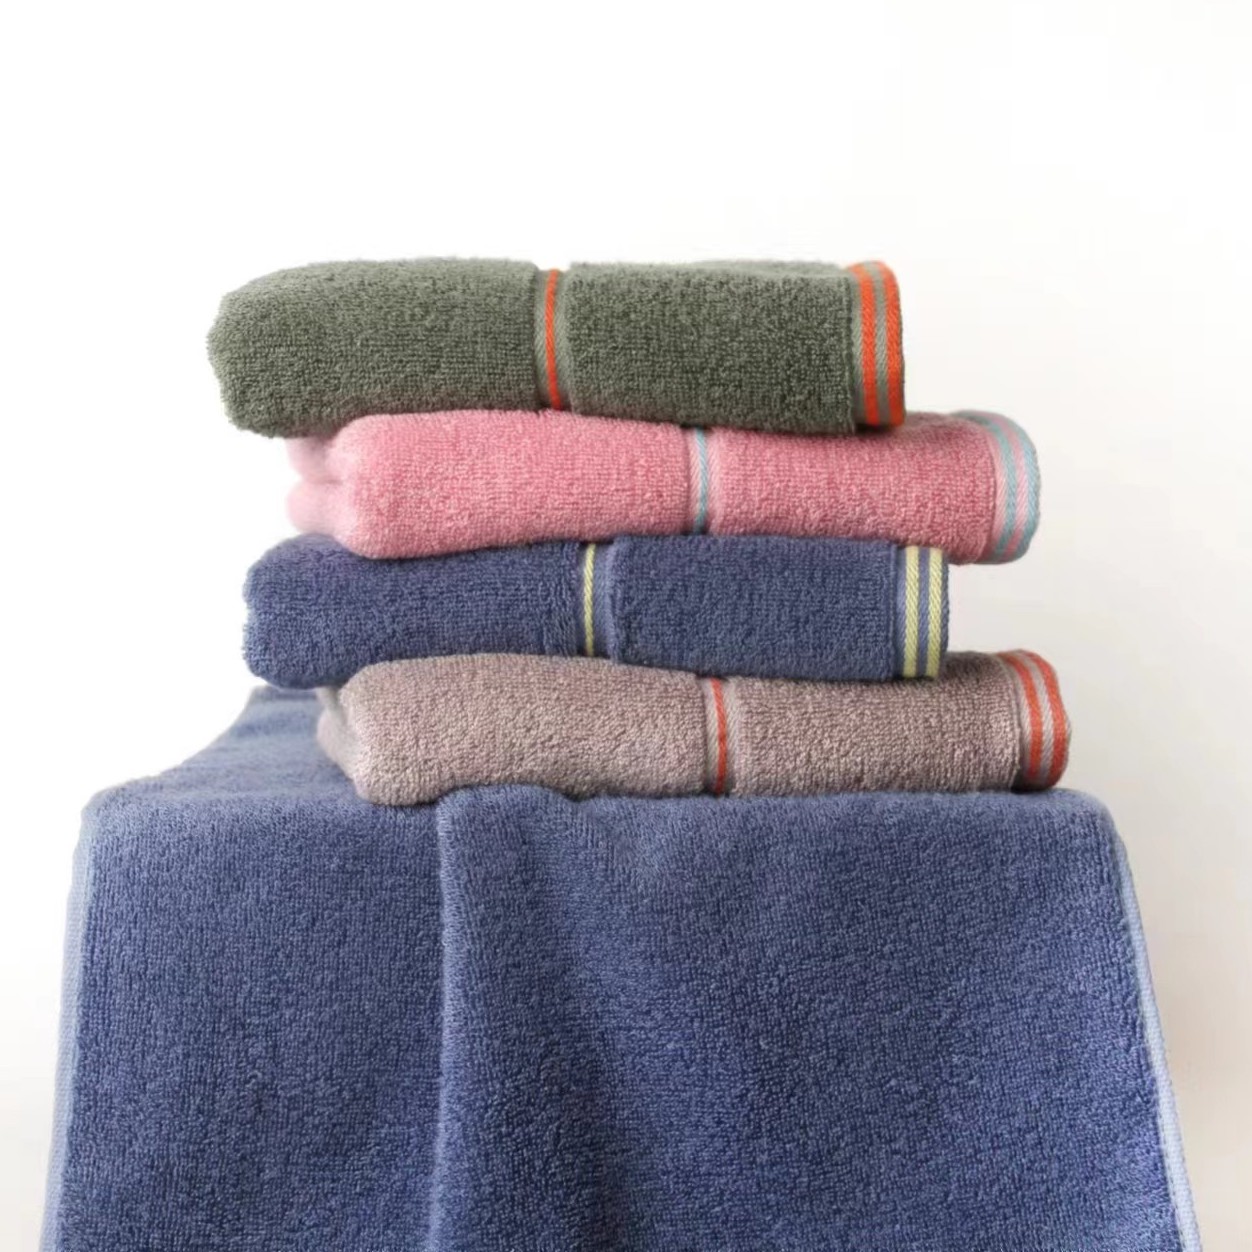 Tens Towels 100% Cotton Bath Mats 20 x 32 Inches, (Not a Bathroom Rug),  Super Absorbent, Hotel Quality Premium Floor Towels, Lux